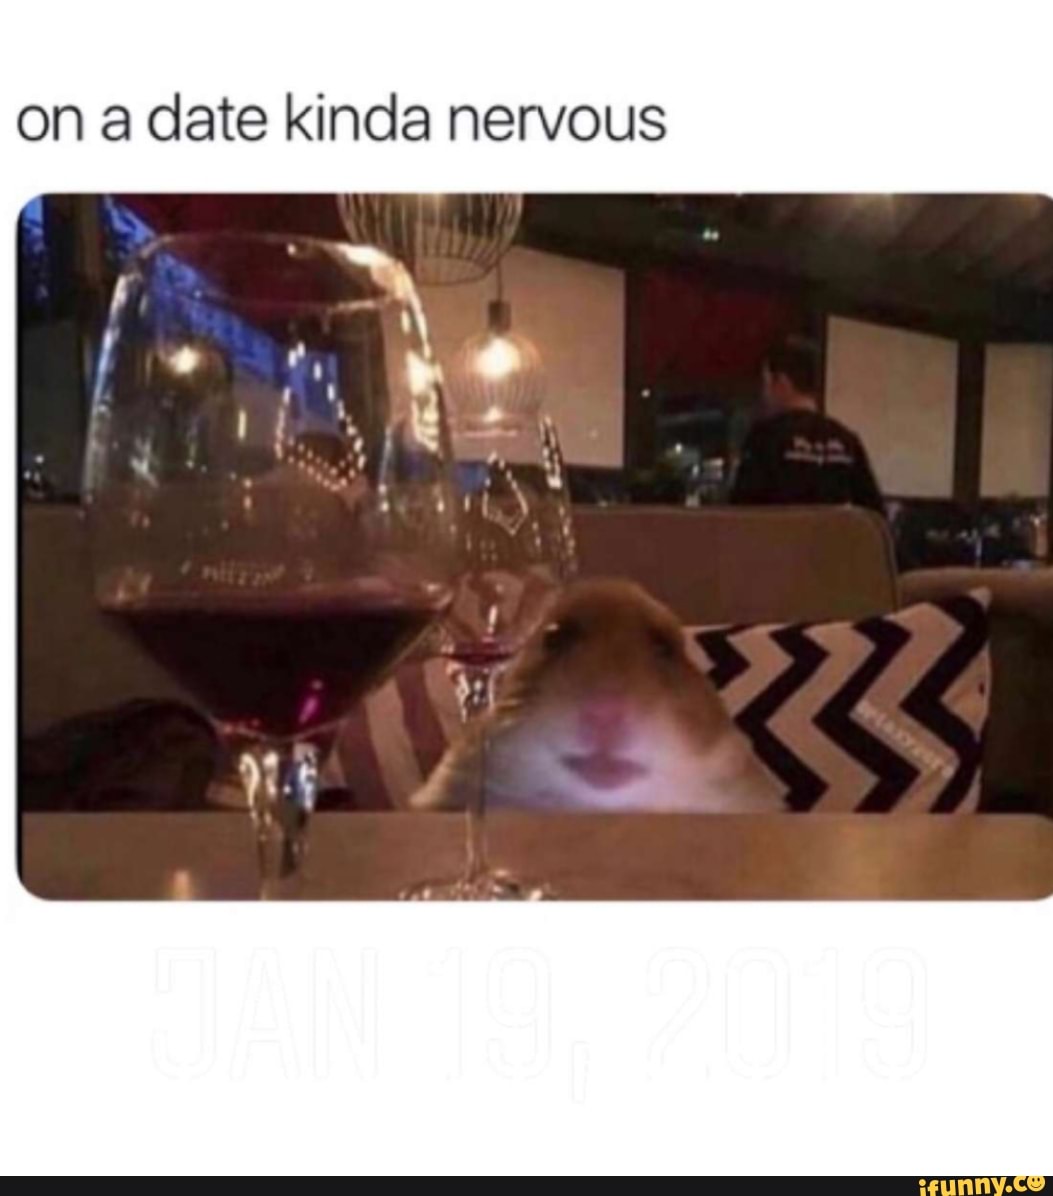 On a date kinda nervous meme